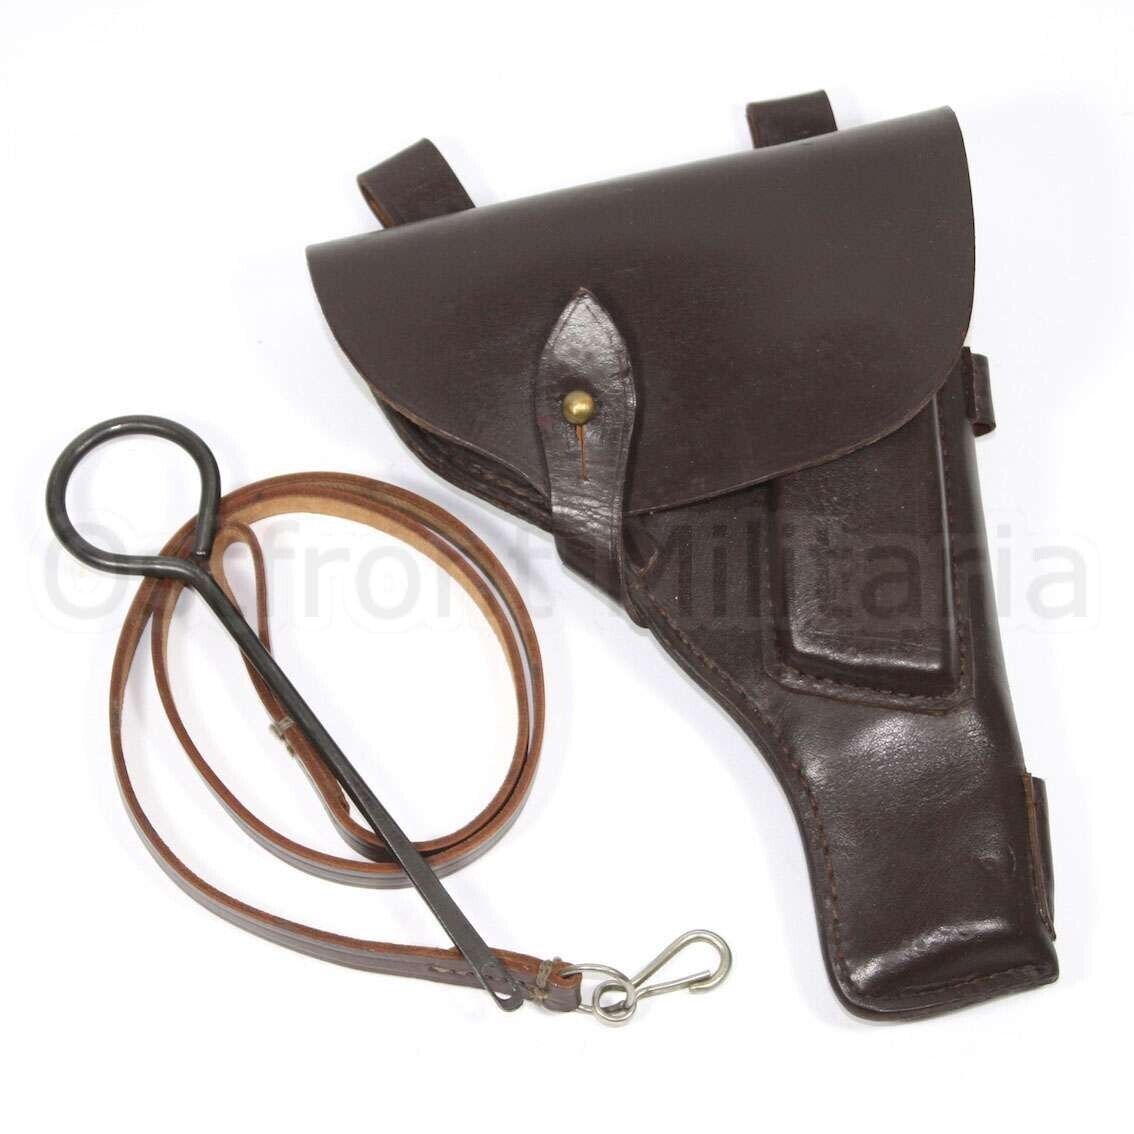 Original Soviet Tokarev TT-33 pistol belt holster & accessories Marked